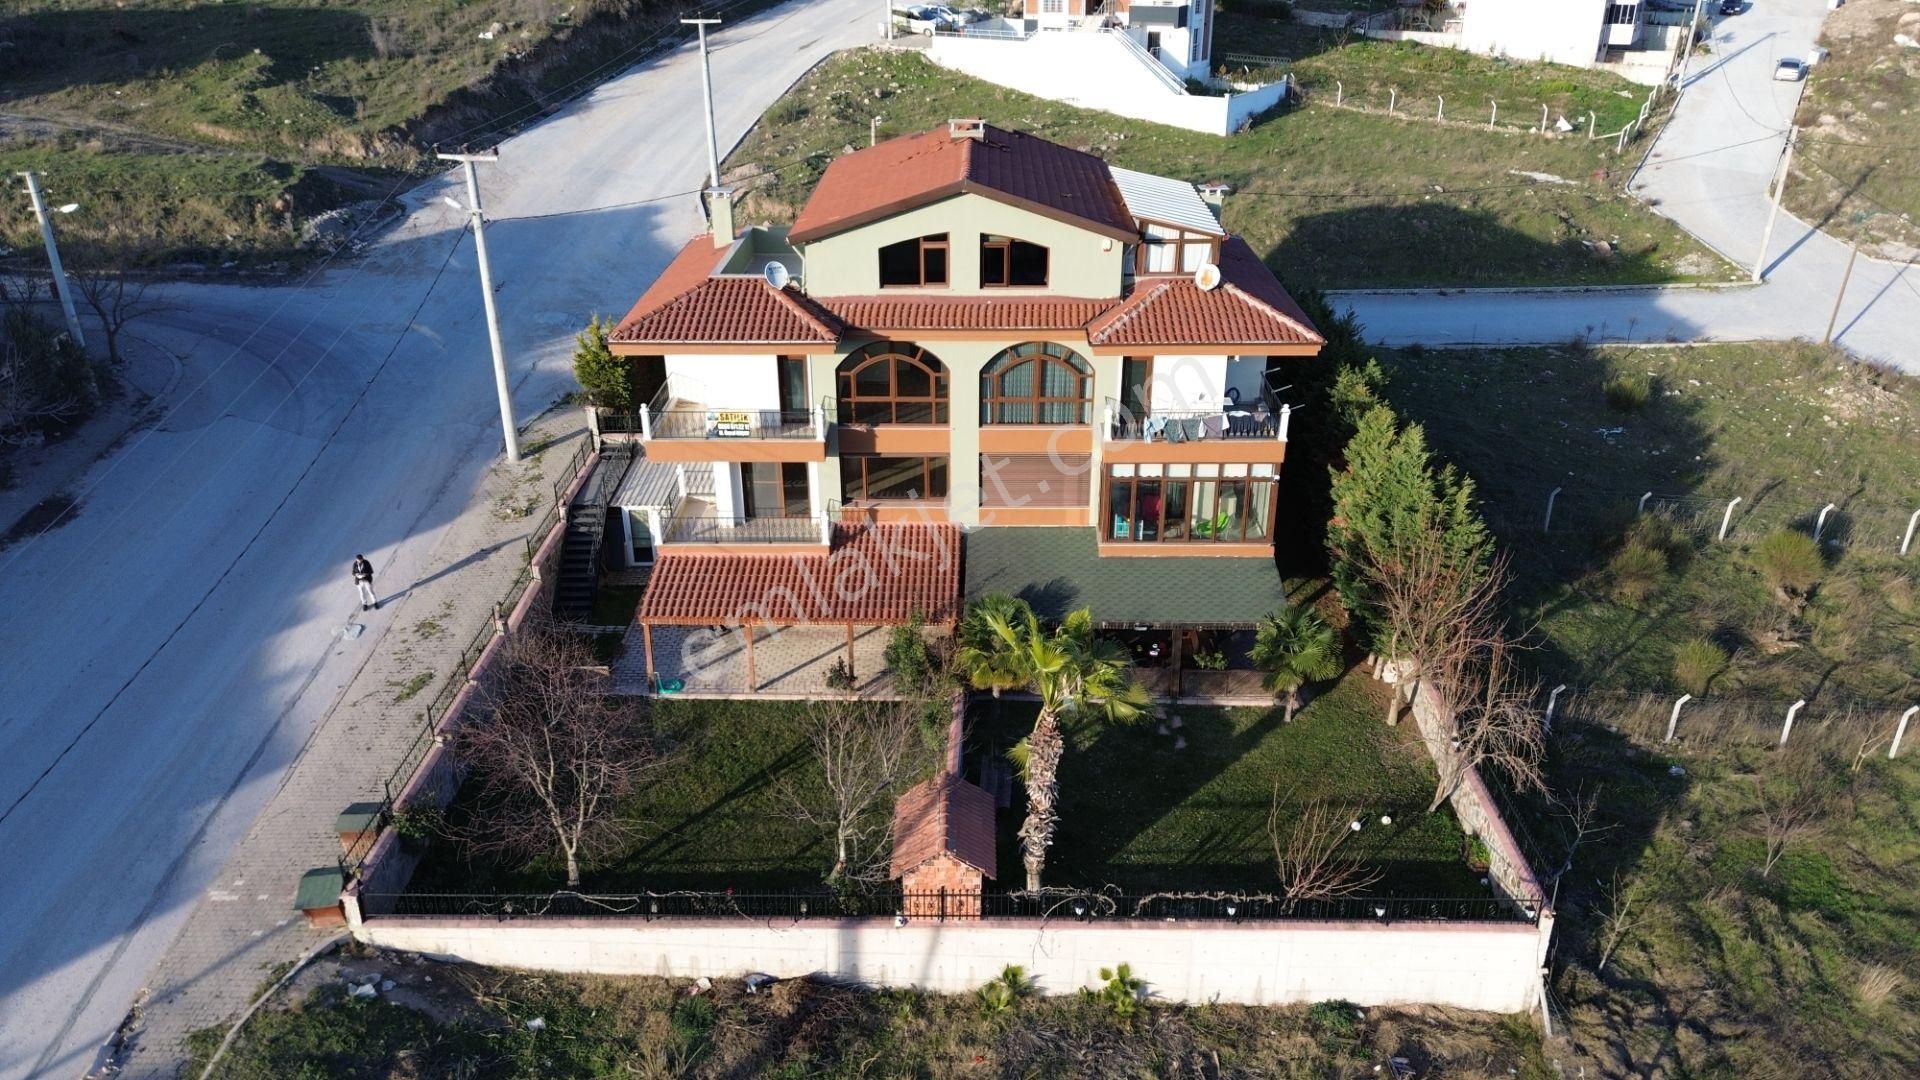 Karesi Kuva-İ Milliye Satılık Villa  GOOD İNVEST YÖN'den K.MİLLİYE Mah.nde Satılık 5+2 Emsalsiz Villa